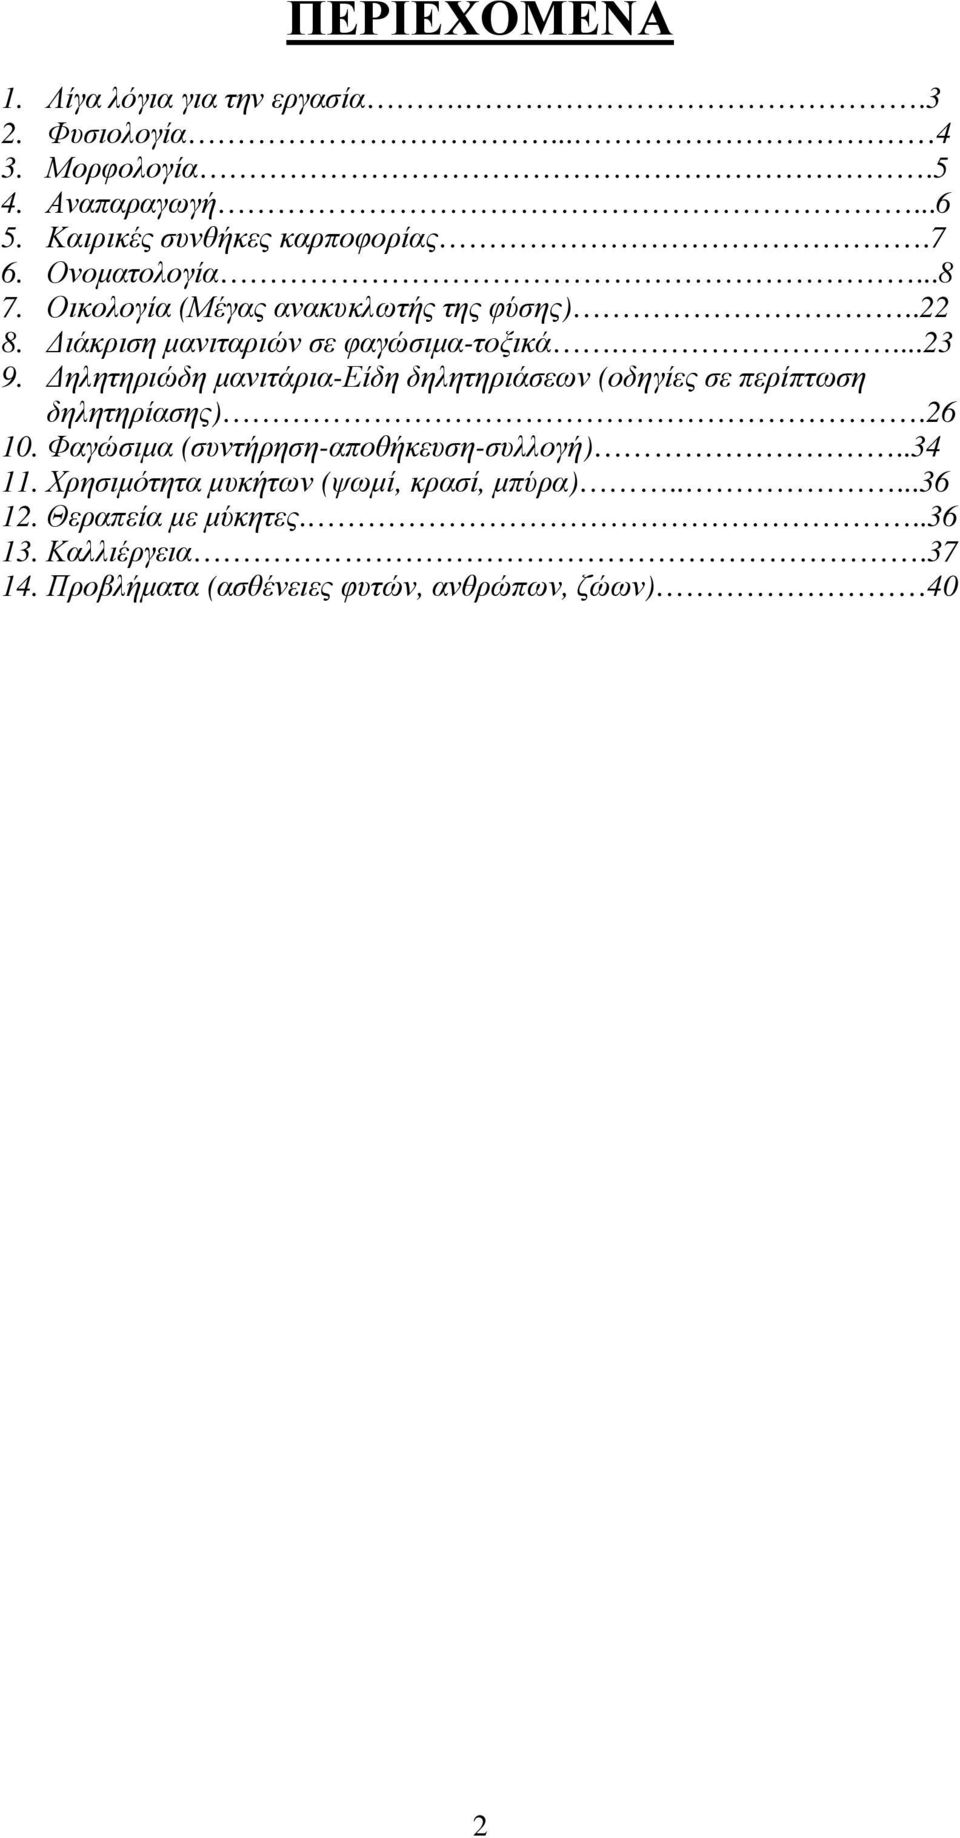 ηλητηριώδη µανιτάρια-είδη δηλητηριάσεων (οδηγίες σε περίπτωση δηλητηρίασης).26 10. Φαγώσιµα (συντήρηση-αποθήκευση-συλλογή)..34 11.